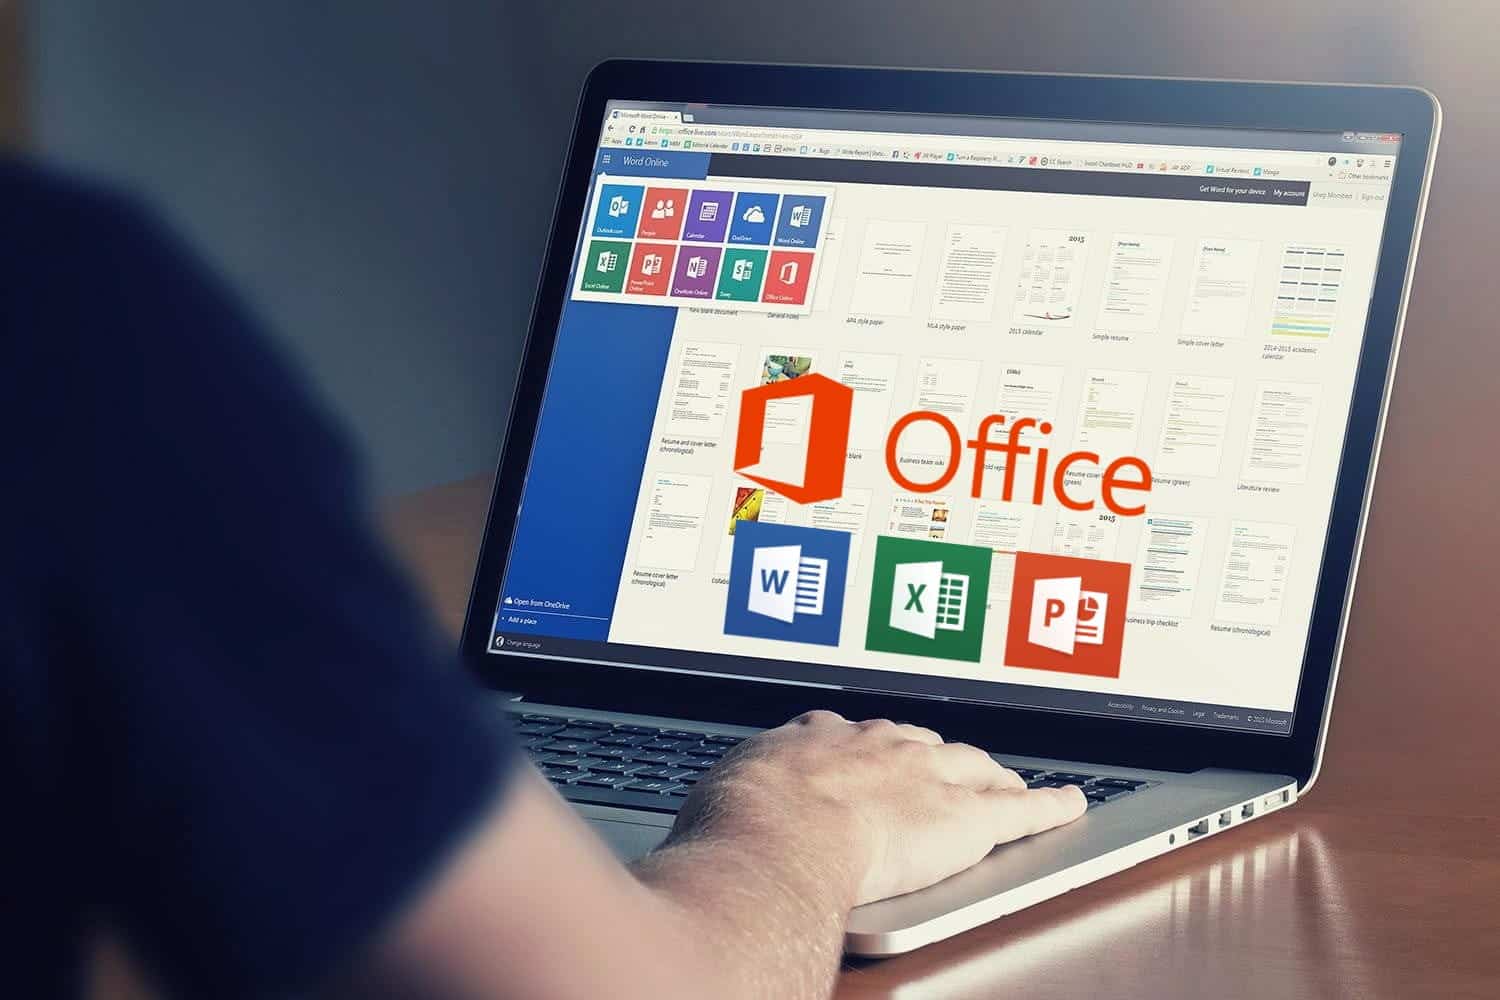 أفضل الطرق للحصول على تراخيص Microsoft Office و Word بتكلفة أقل أو حتى مجانًا - مقالات